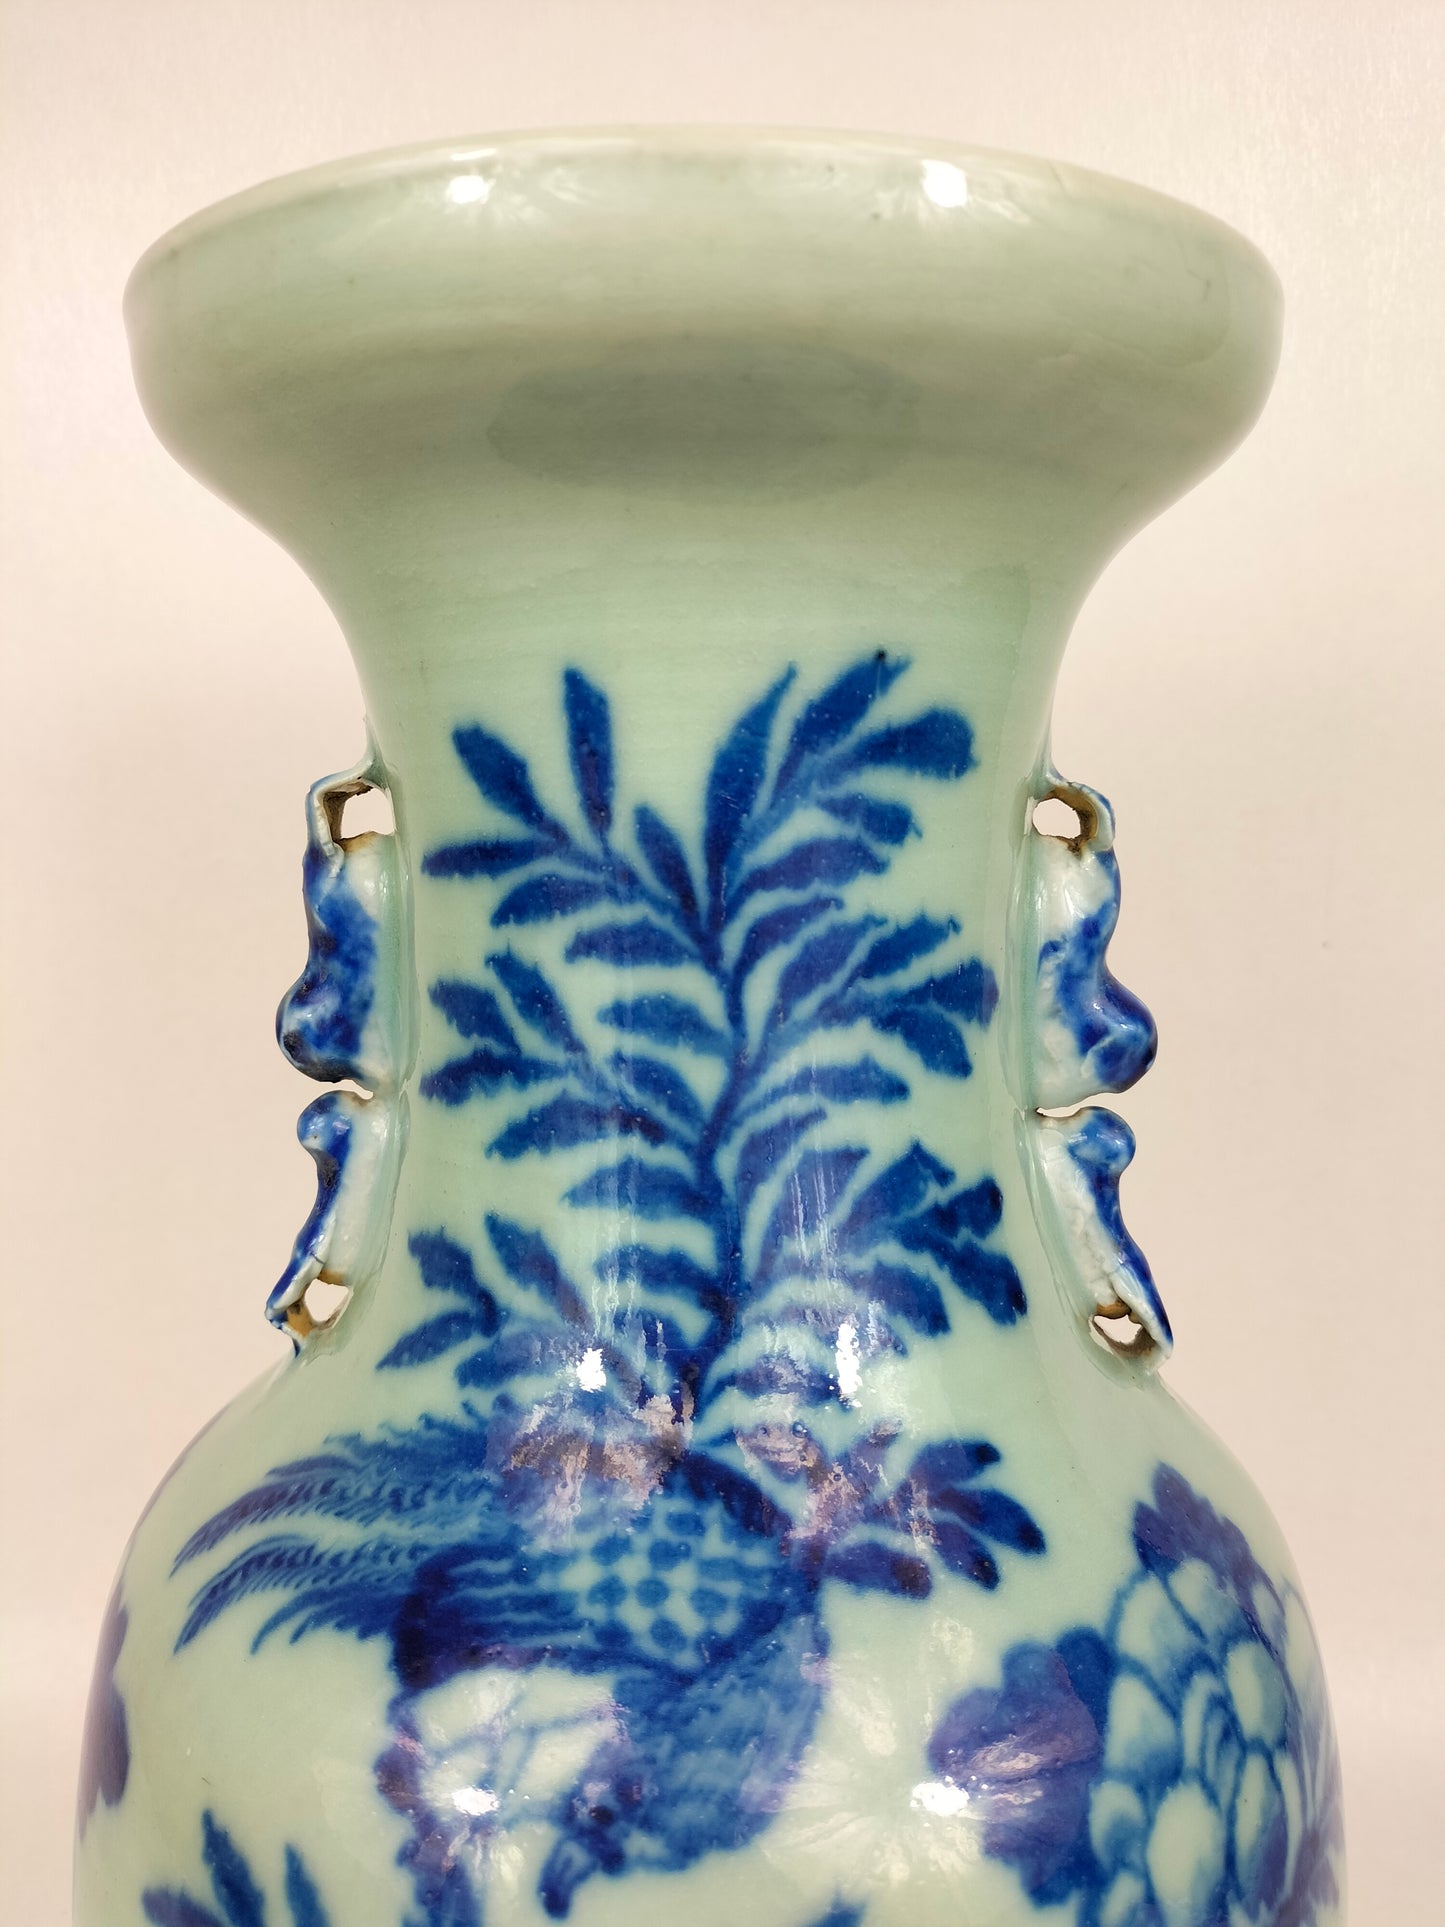 Antigo vaso chinês de cor celadon decorado com pássaros e flores // Dinastia Qing - século XIX